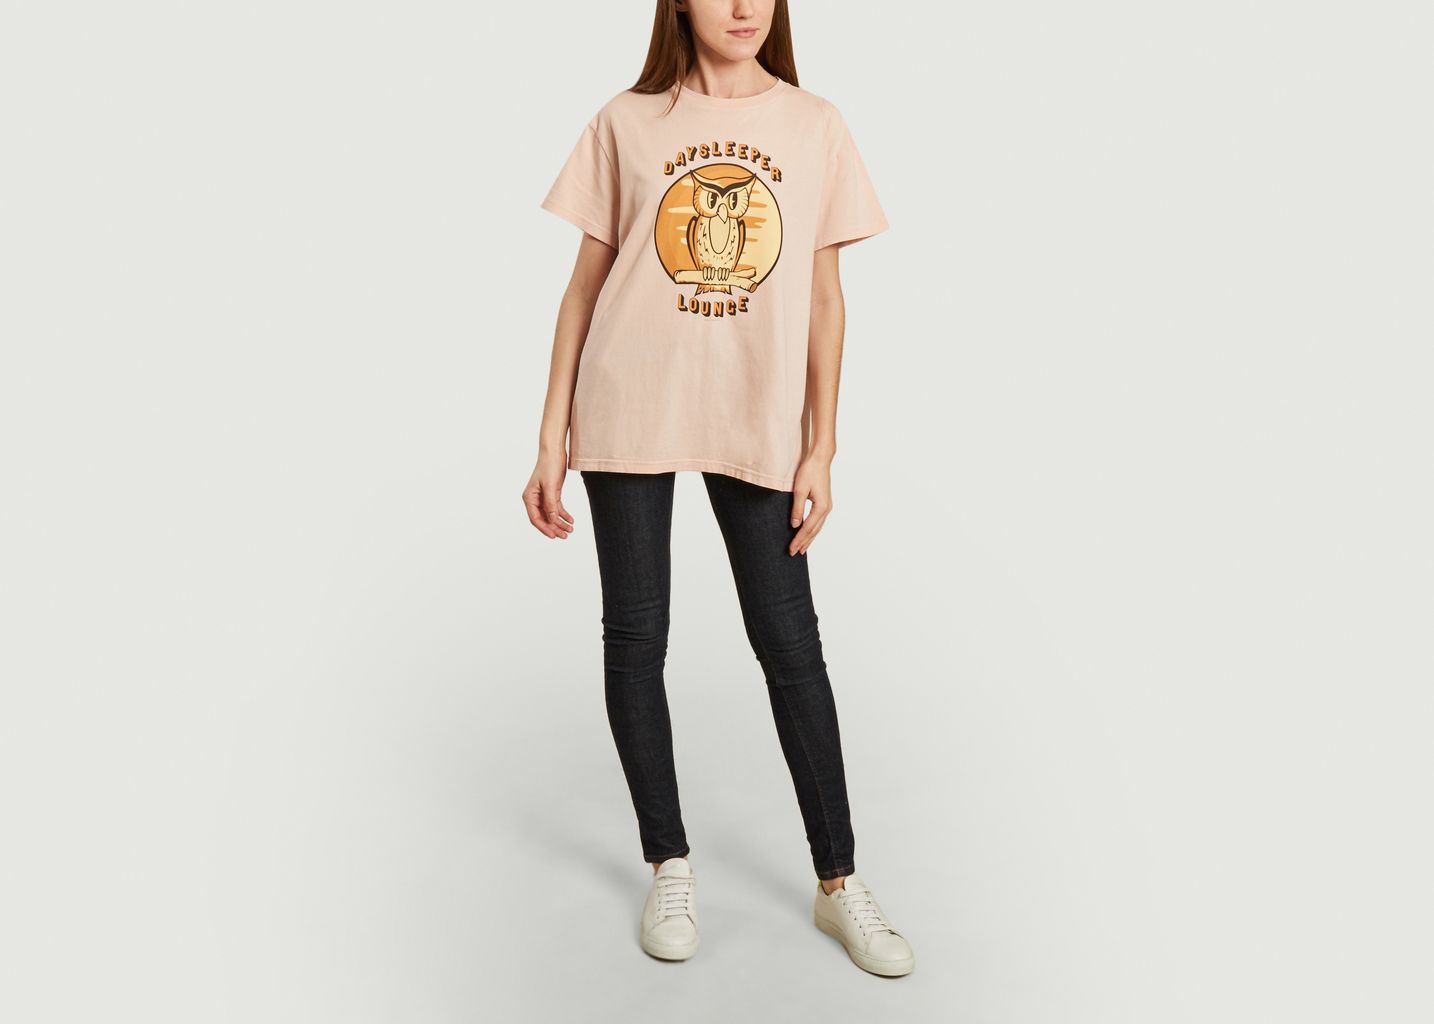 Tina T-shirt - Nudie Jeans